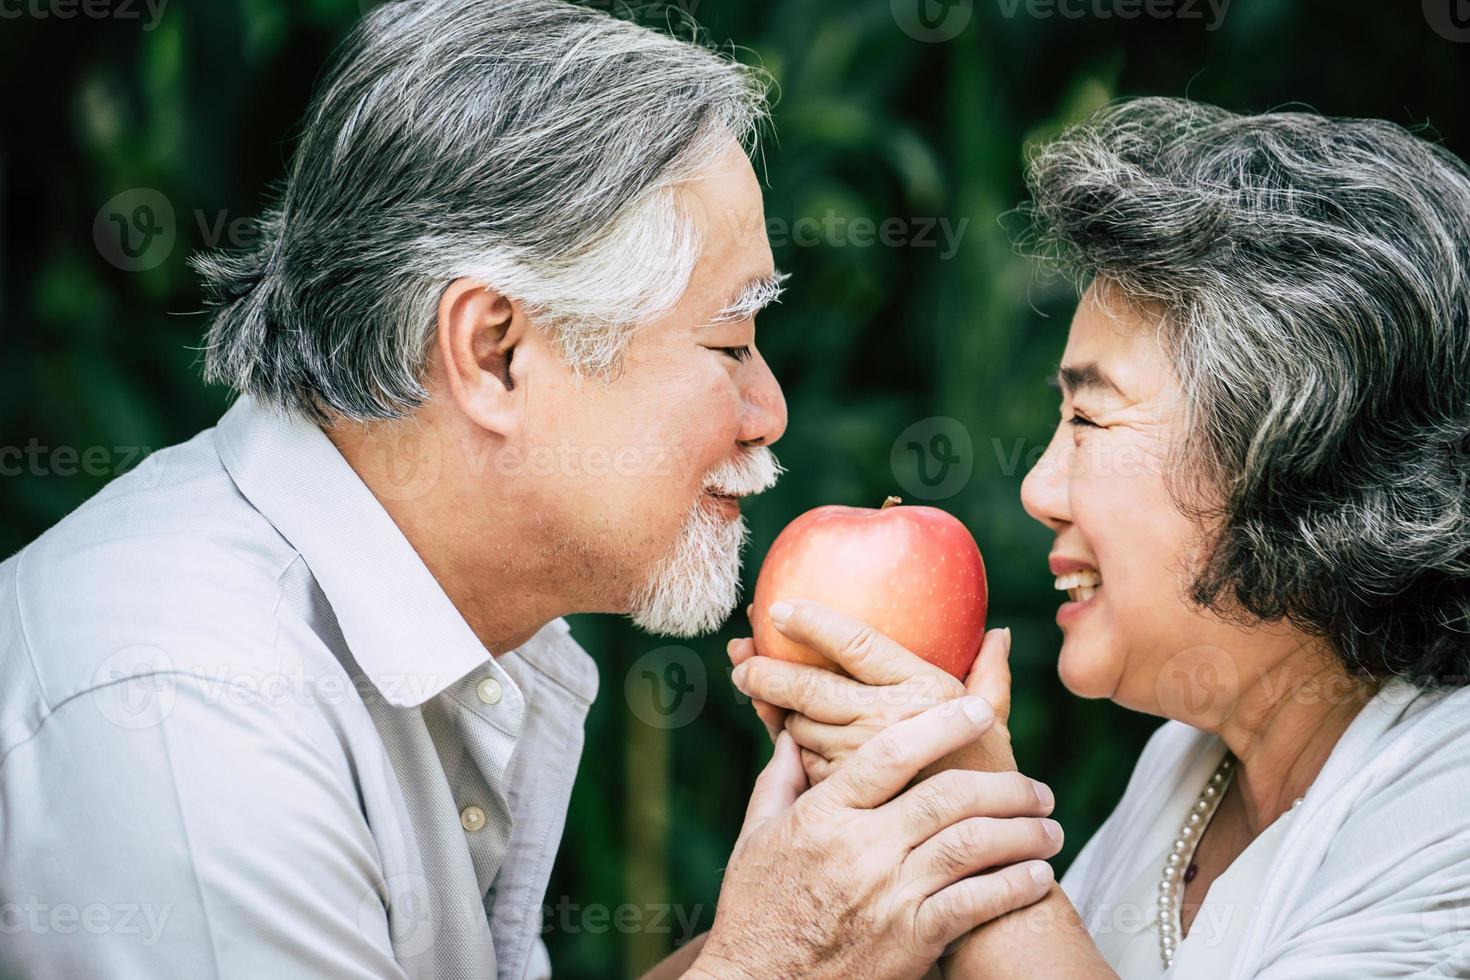 bejaarde echtpaar spelen en eten wat fruit foto